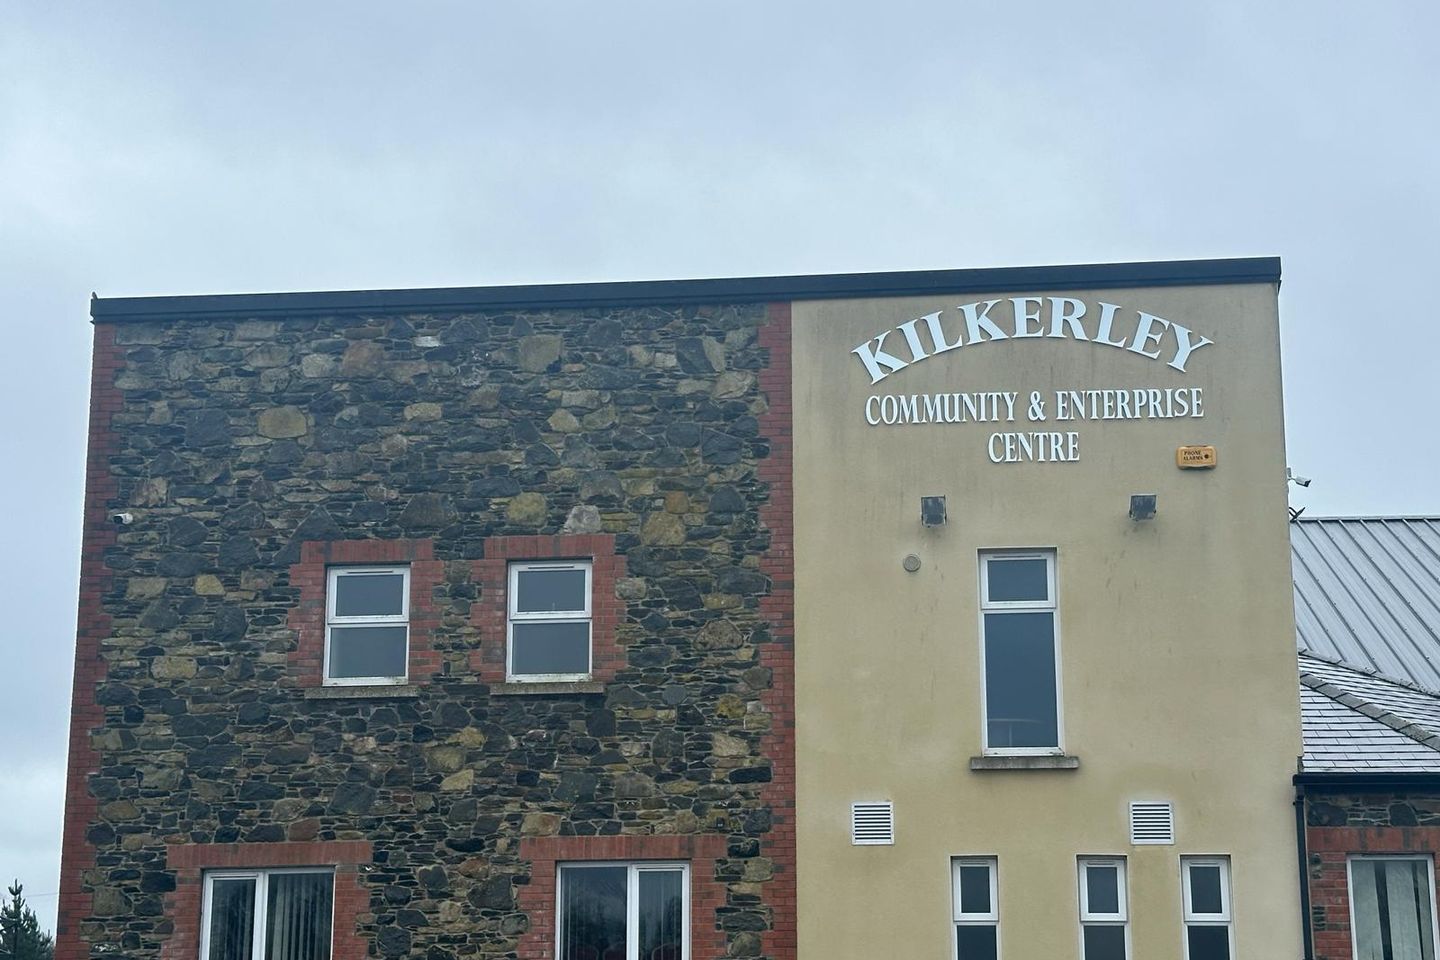 Kilkerley Community Centre, Kilkerley, Co. Louth